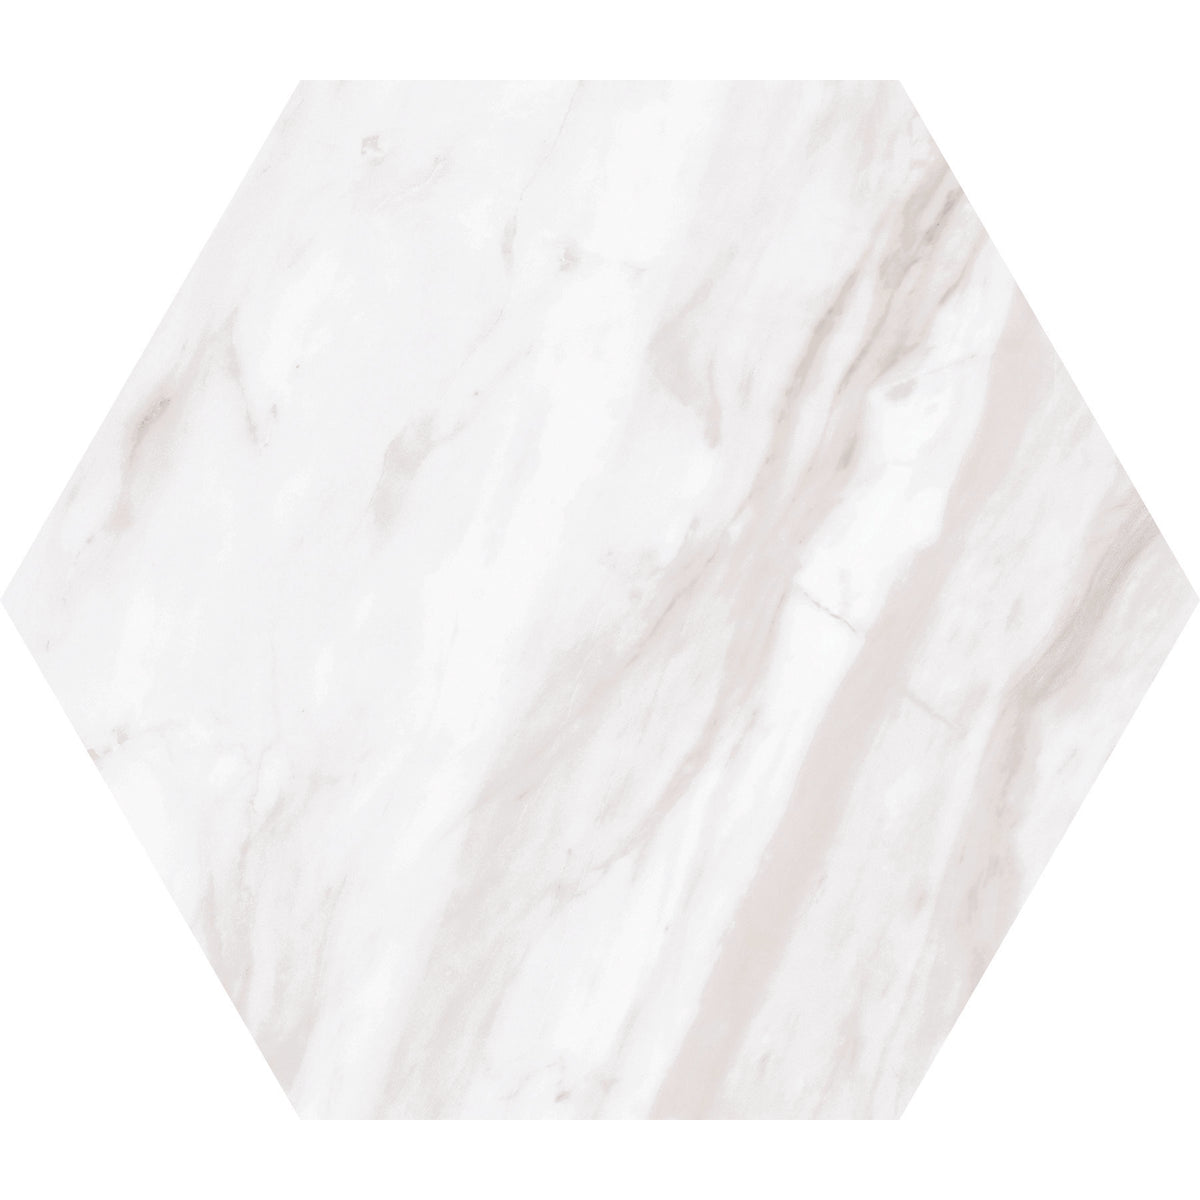 Daltile - Perpetuo - 8 in. Hexagon Glazed Porcelain Floor Tile - Timeless White Matte 2